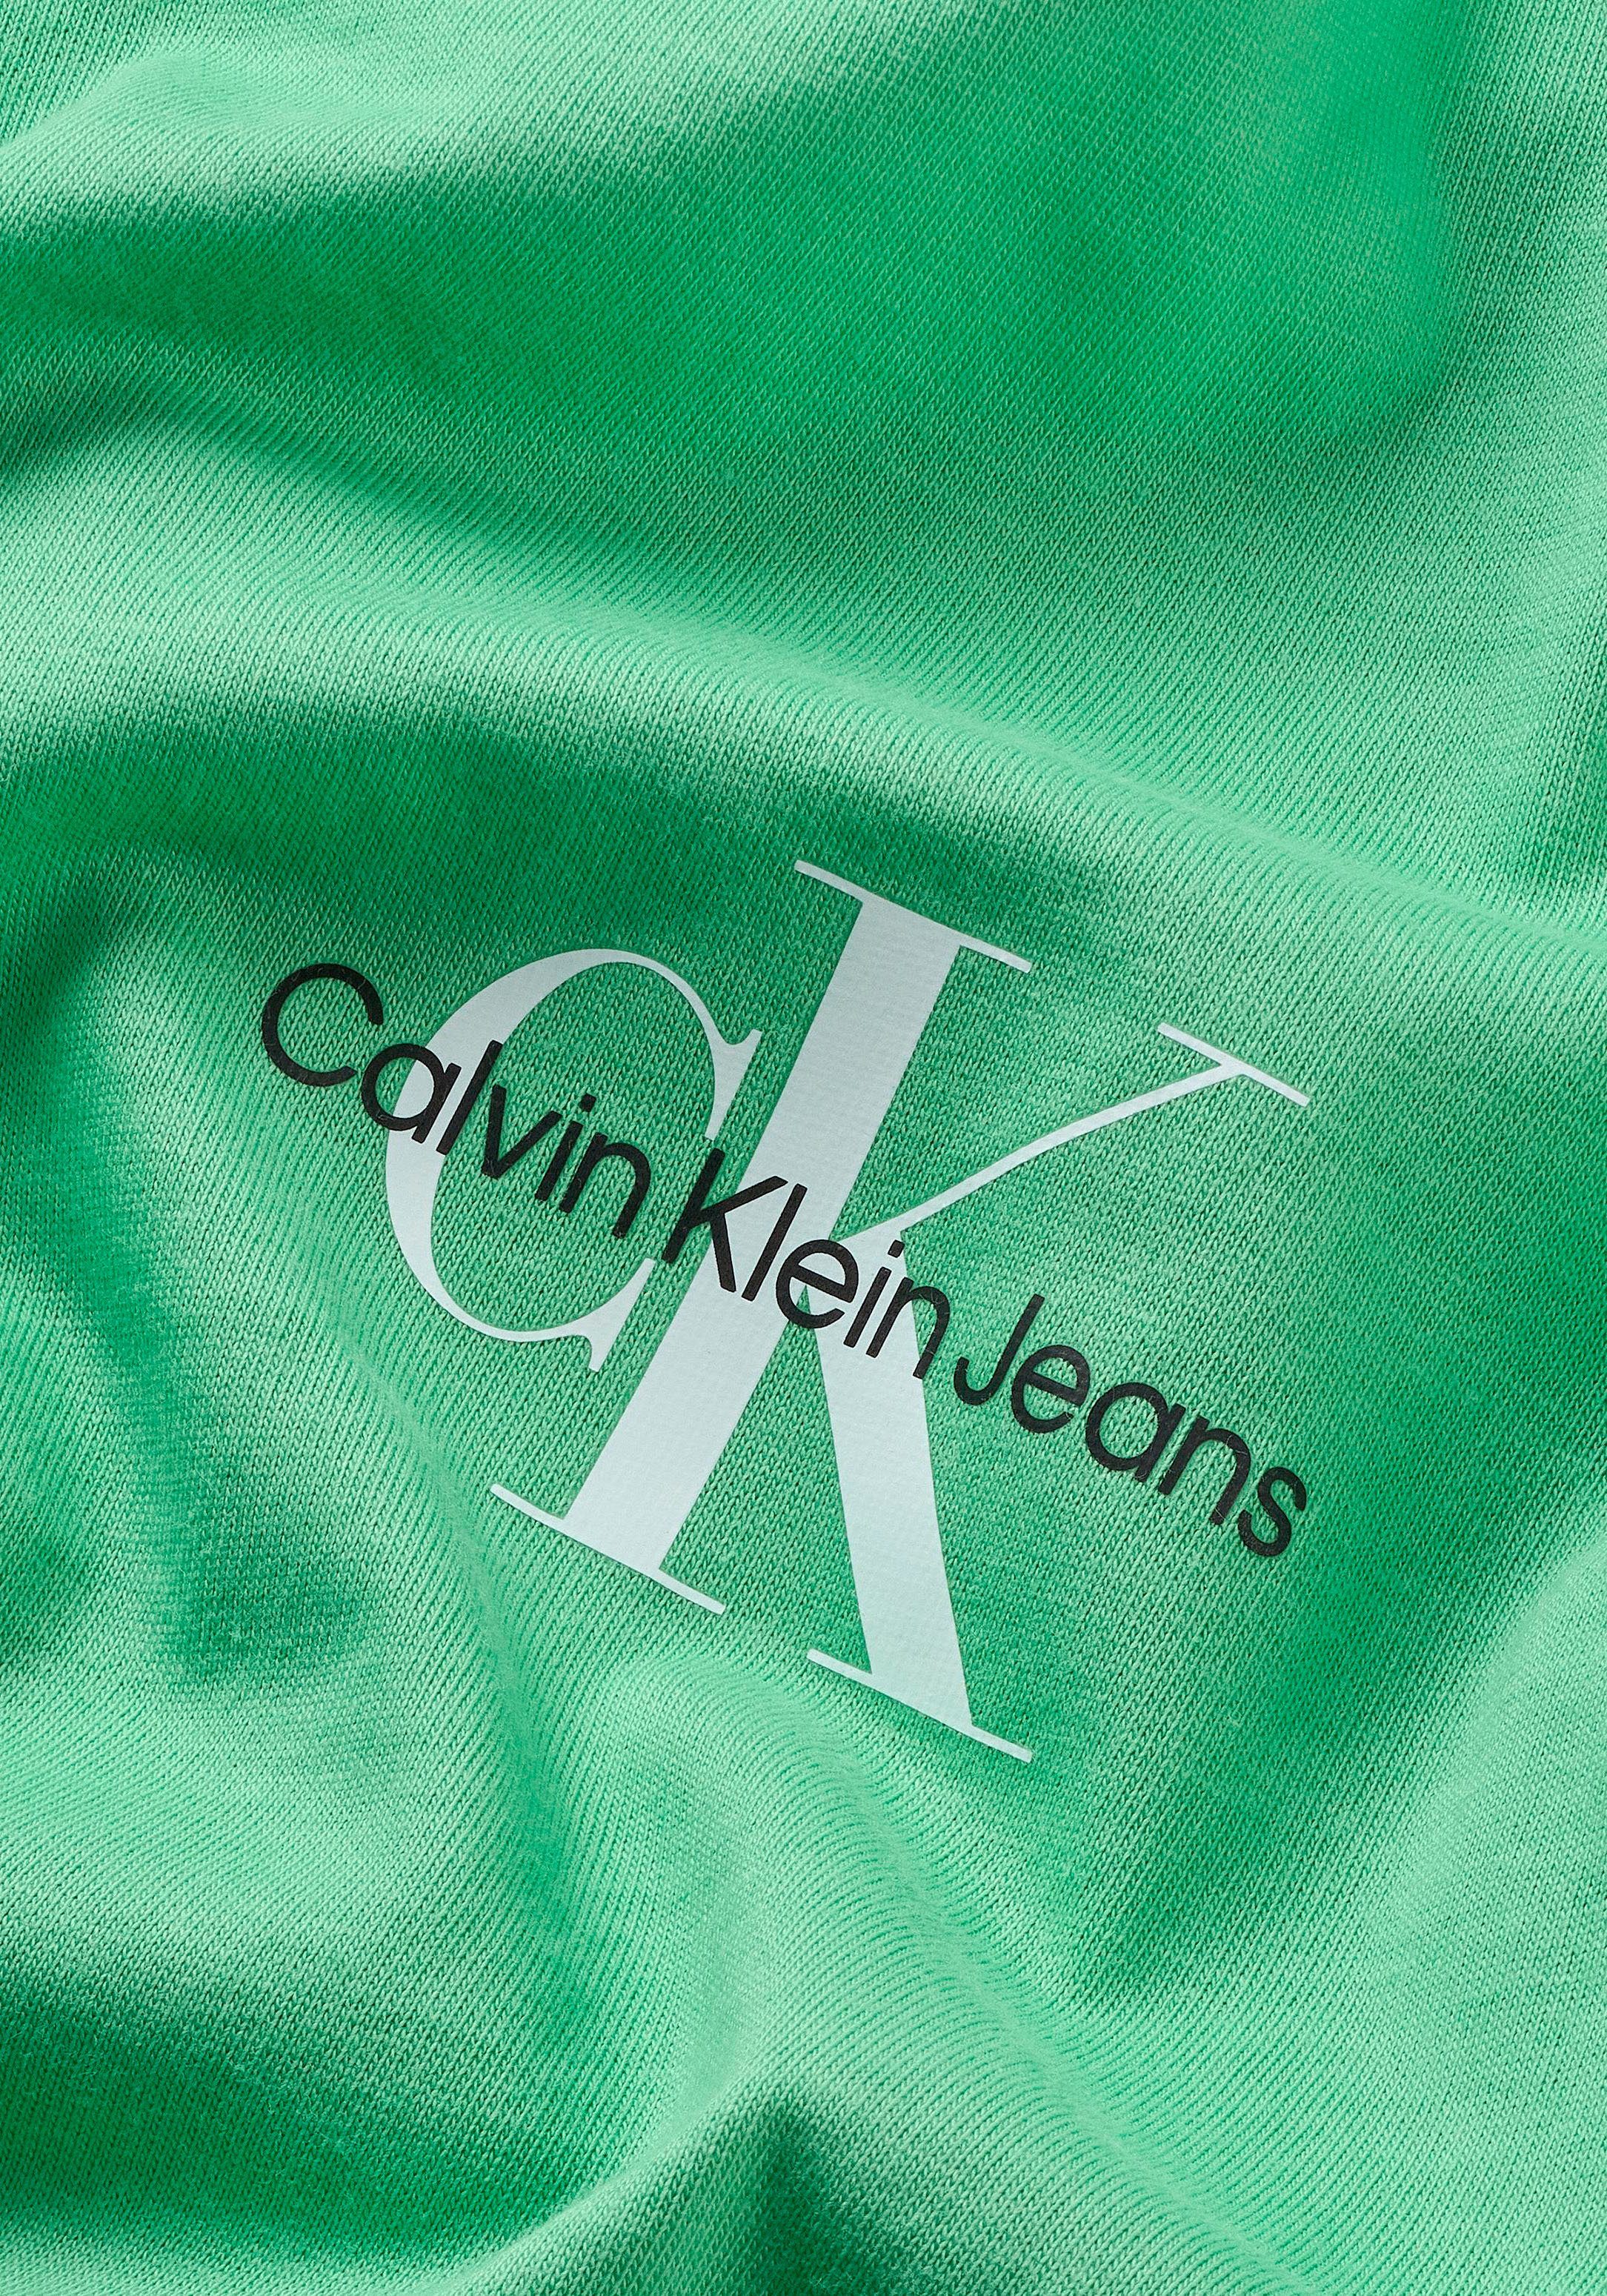 Klein mit Rundhalsausschnitt T-Shirt grün Calvin Jeans